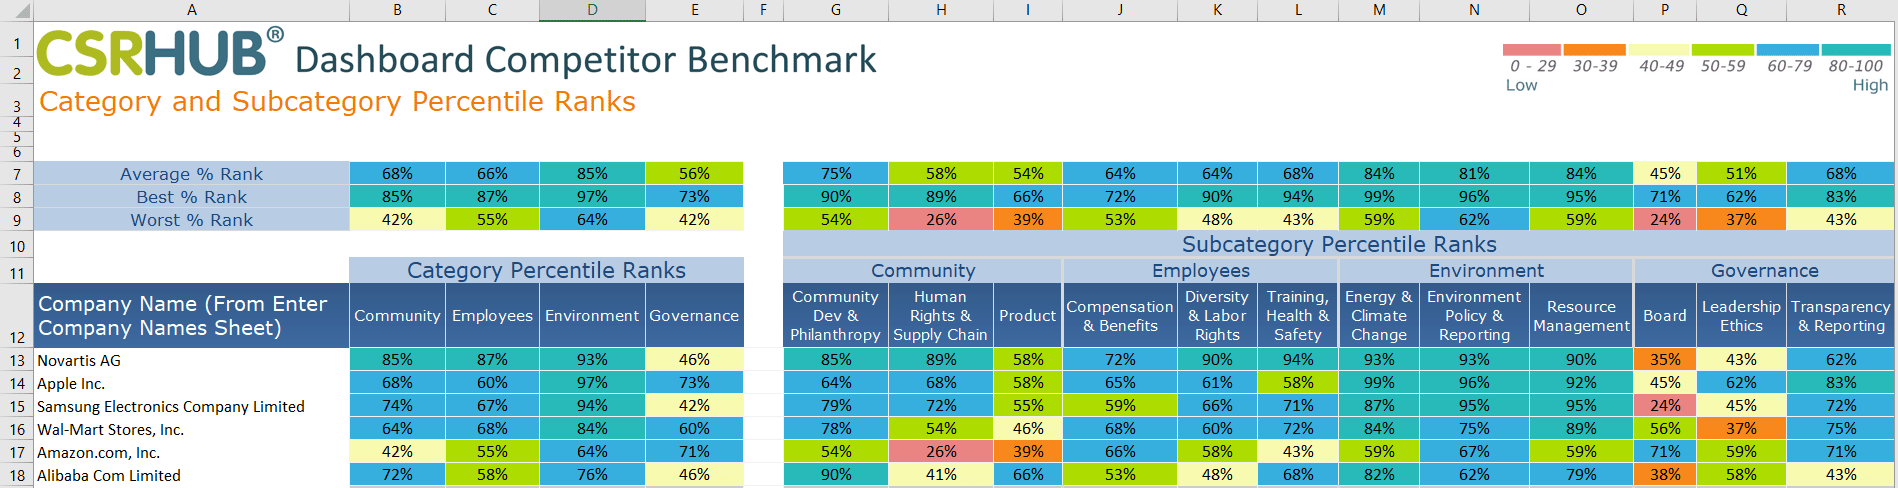 CSRHub benchmark dashboard 2021ac